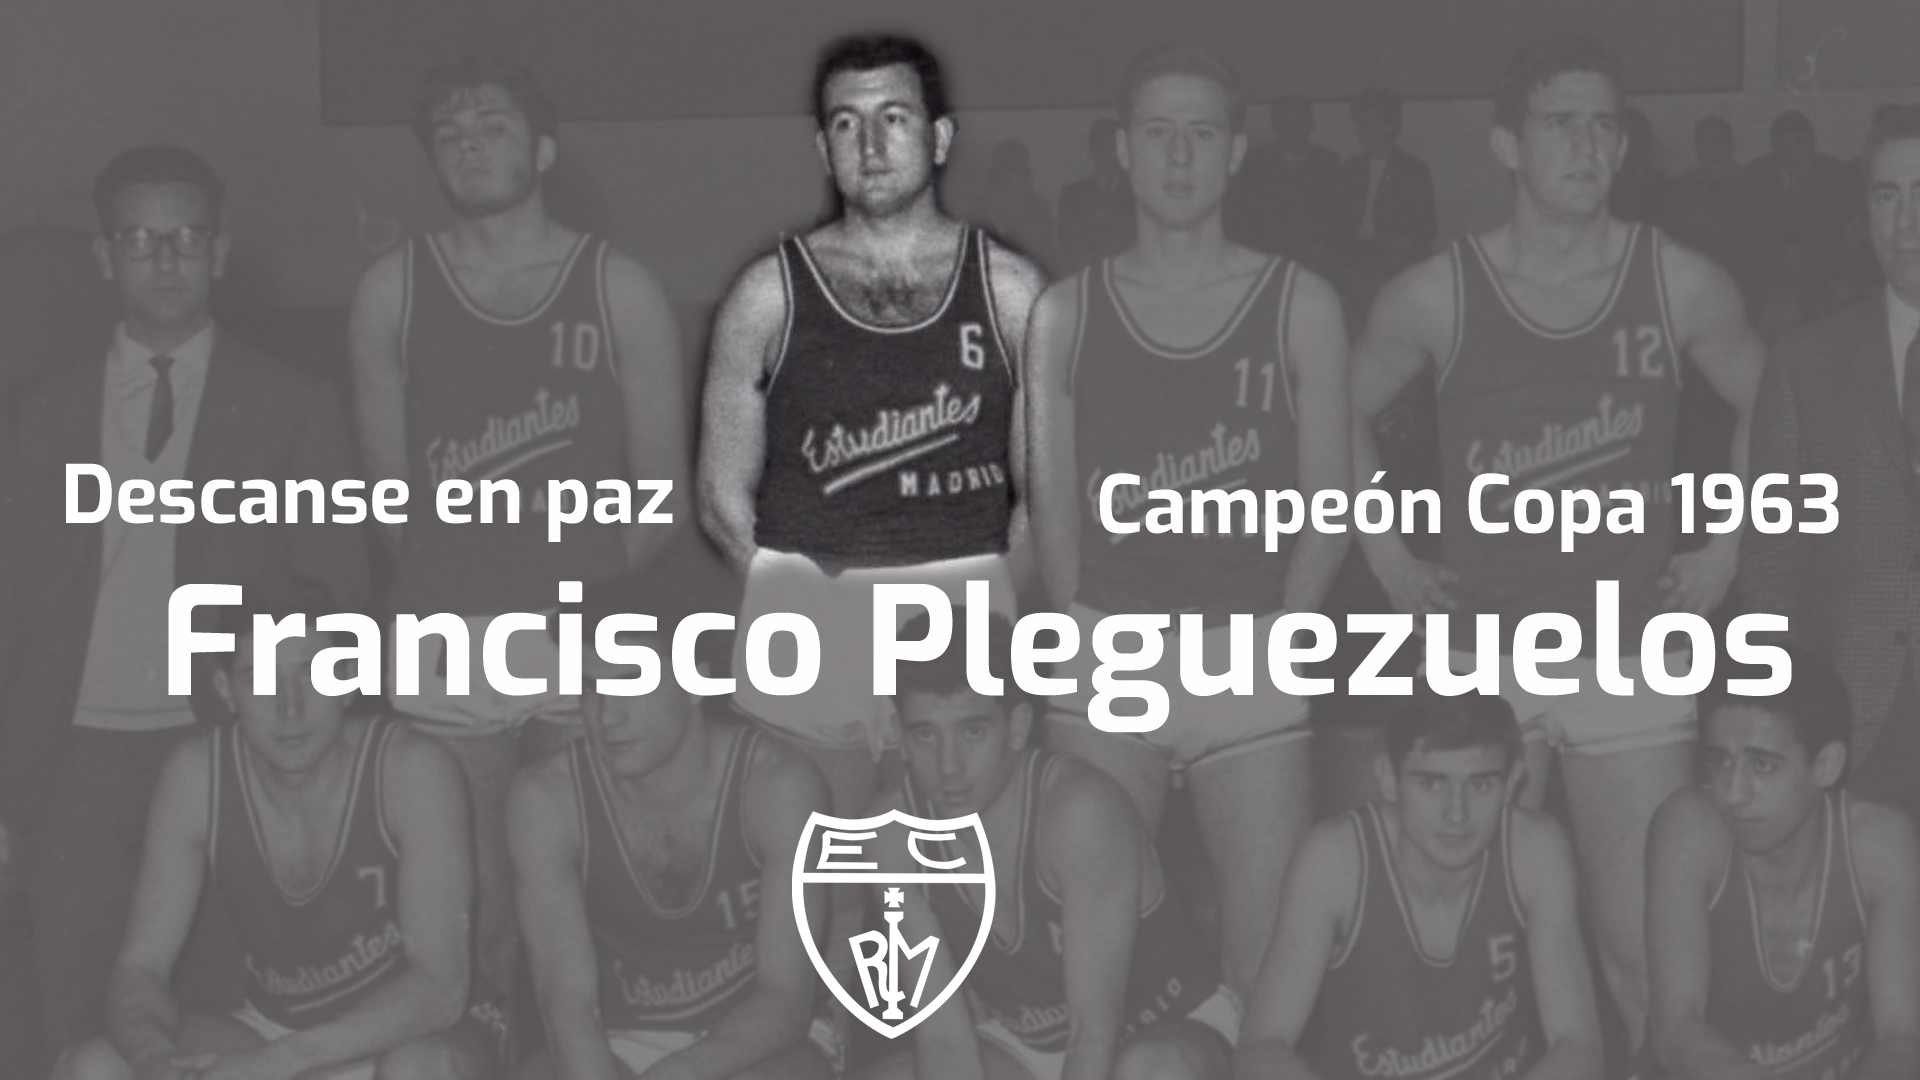 Descanse en paz Paco Pleguezuelos, campeón en 1963